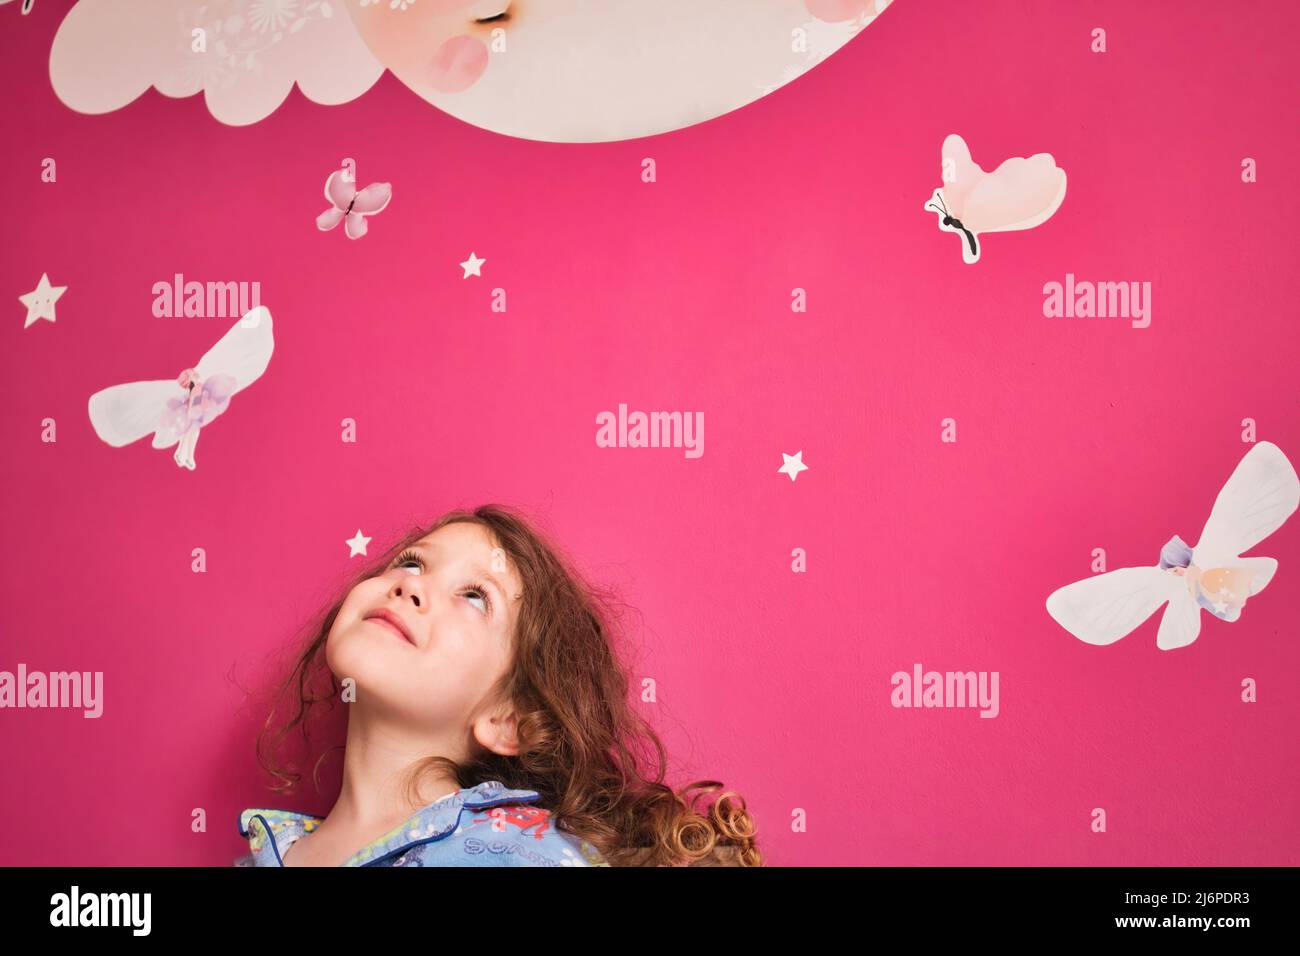 Giovane ragazza carina che indossa pigiami guardando verso l'alto un muro rosa con le stelle della decalcomania, la luna e le fate Foto Stock